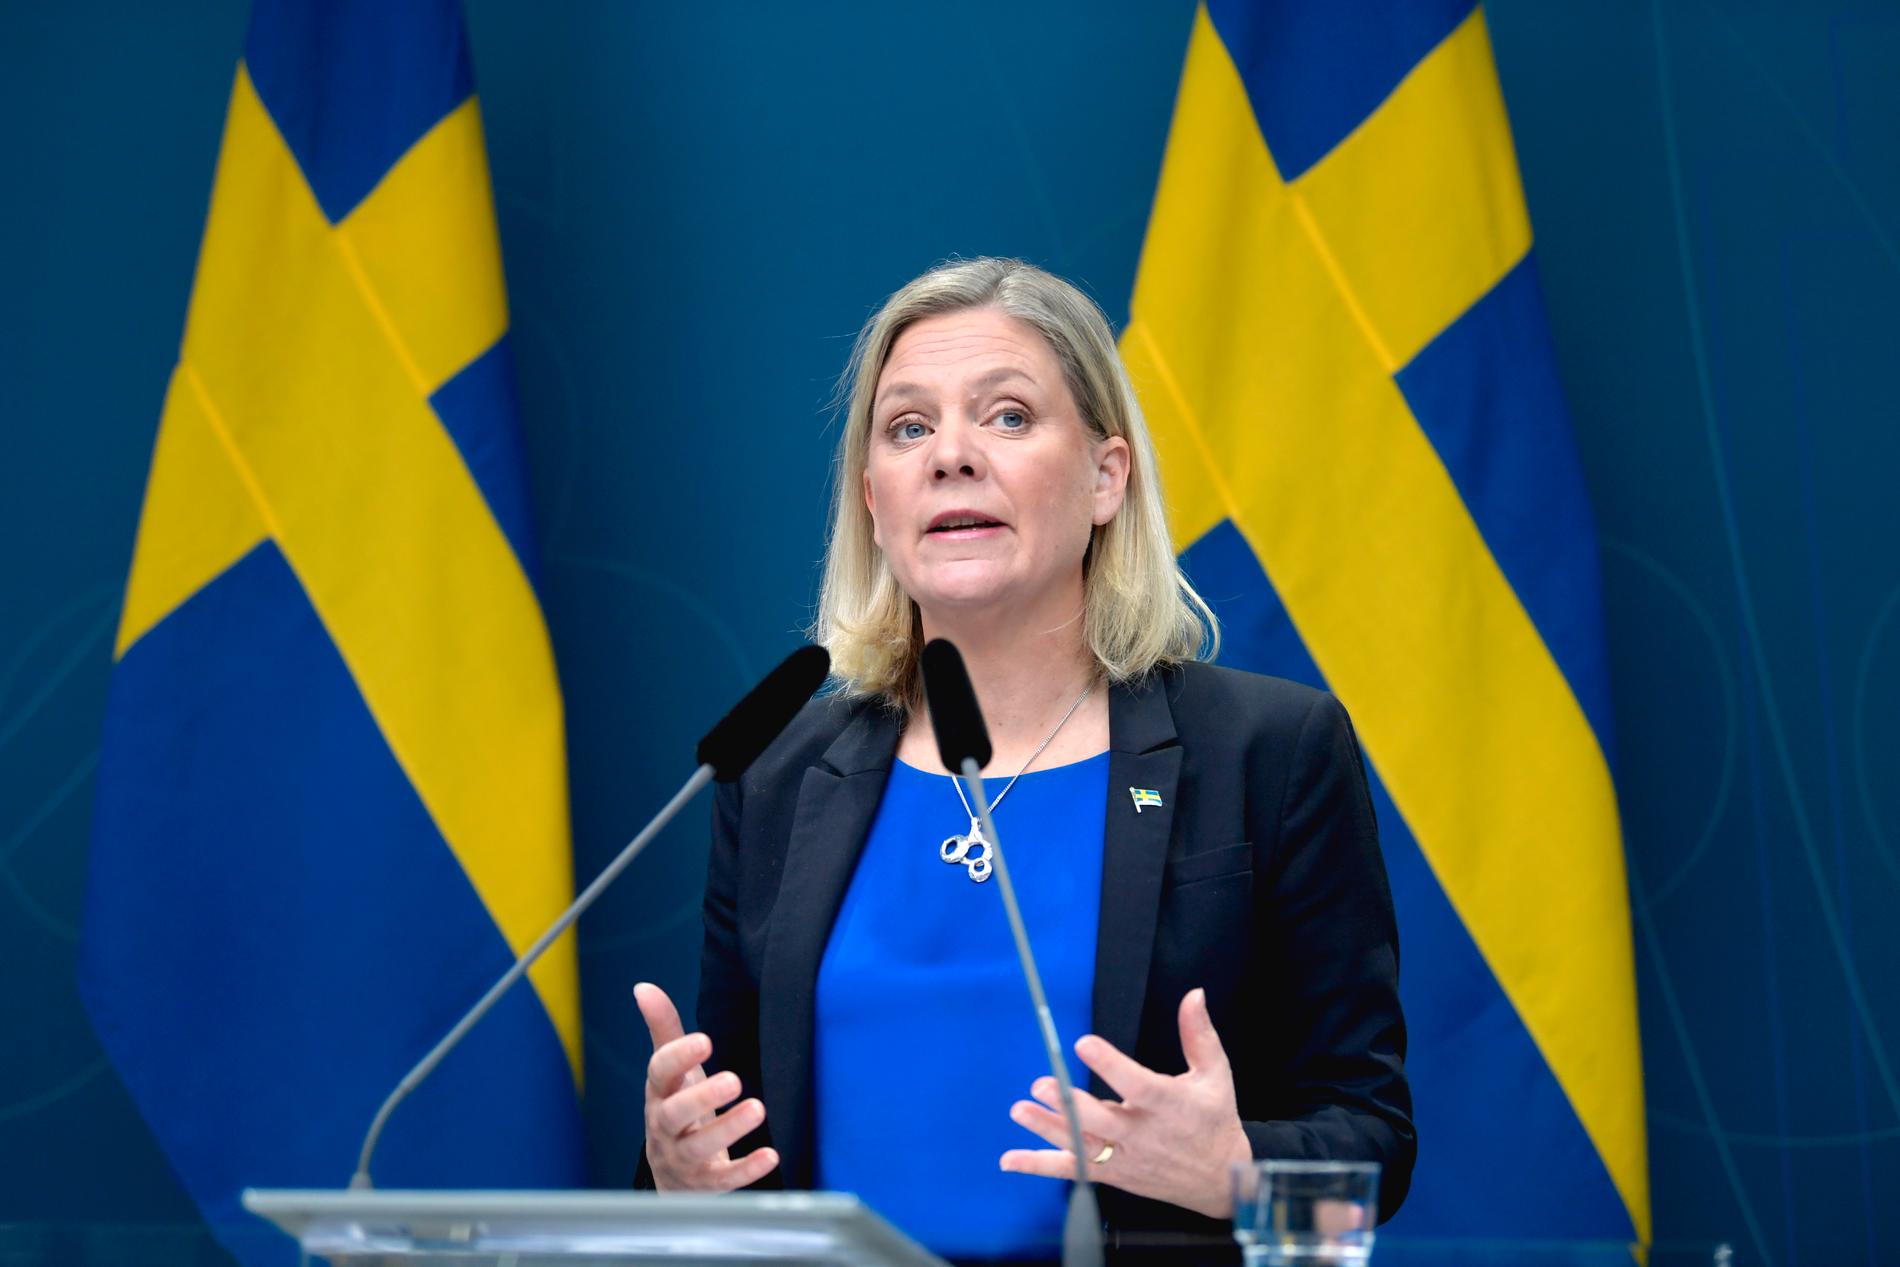 Arbetslösheten i Sverige kommer att öka till nio procent i år, enligt finansminister Magdalena Andersson.